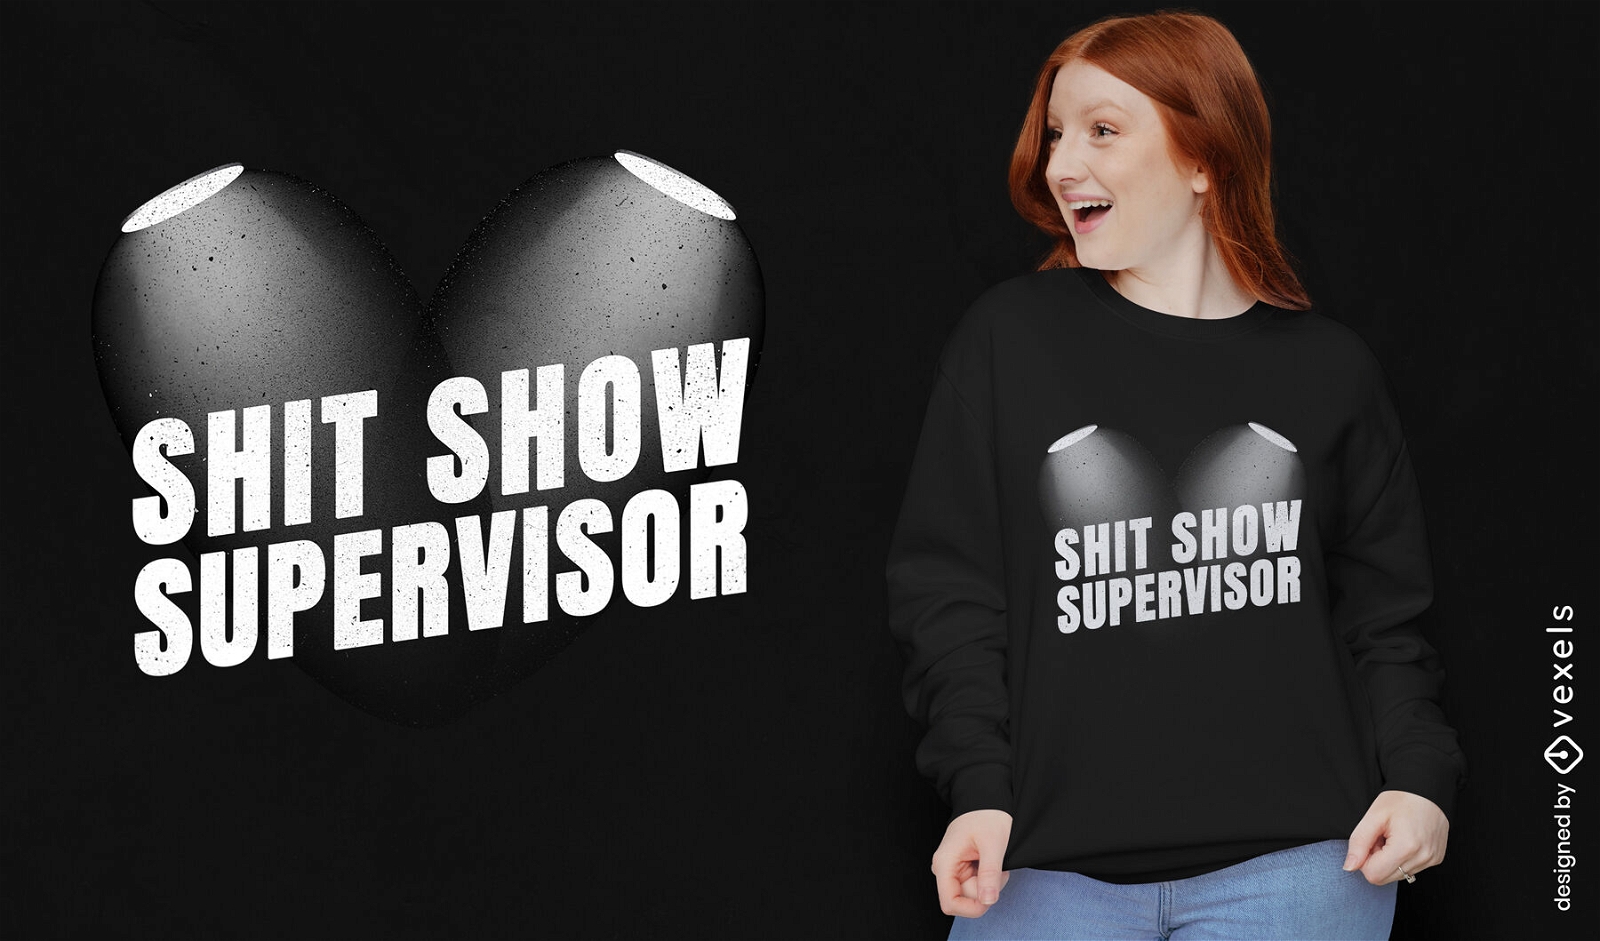 Shit show supervisor t-shirt design